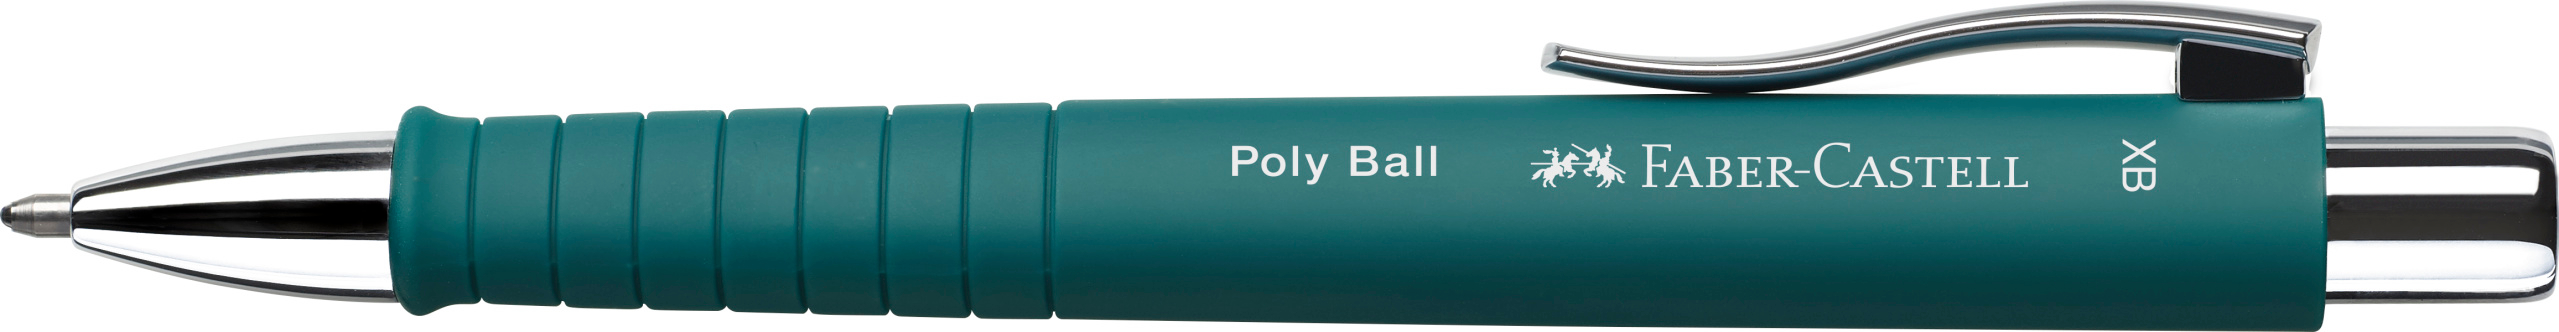 Faber Castell Kugelschreiber PolyBall XB grün<br>